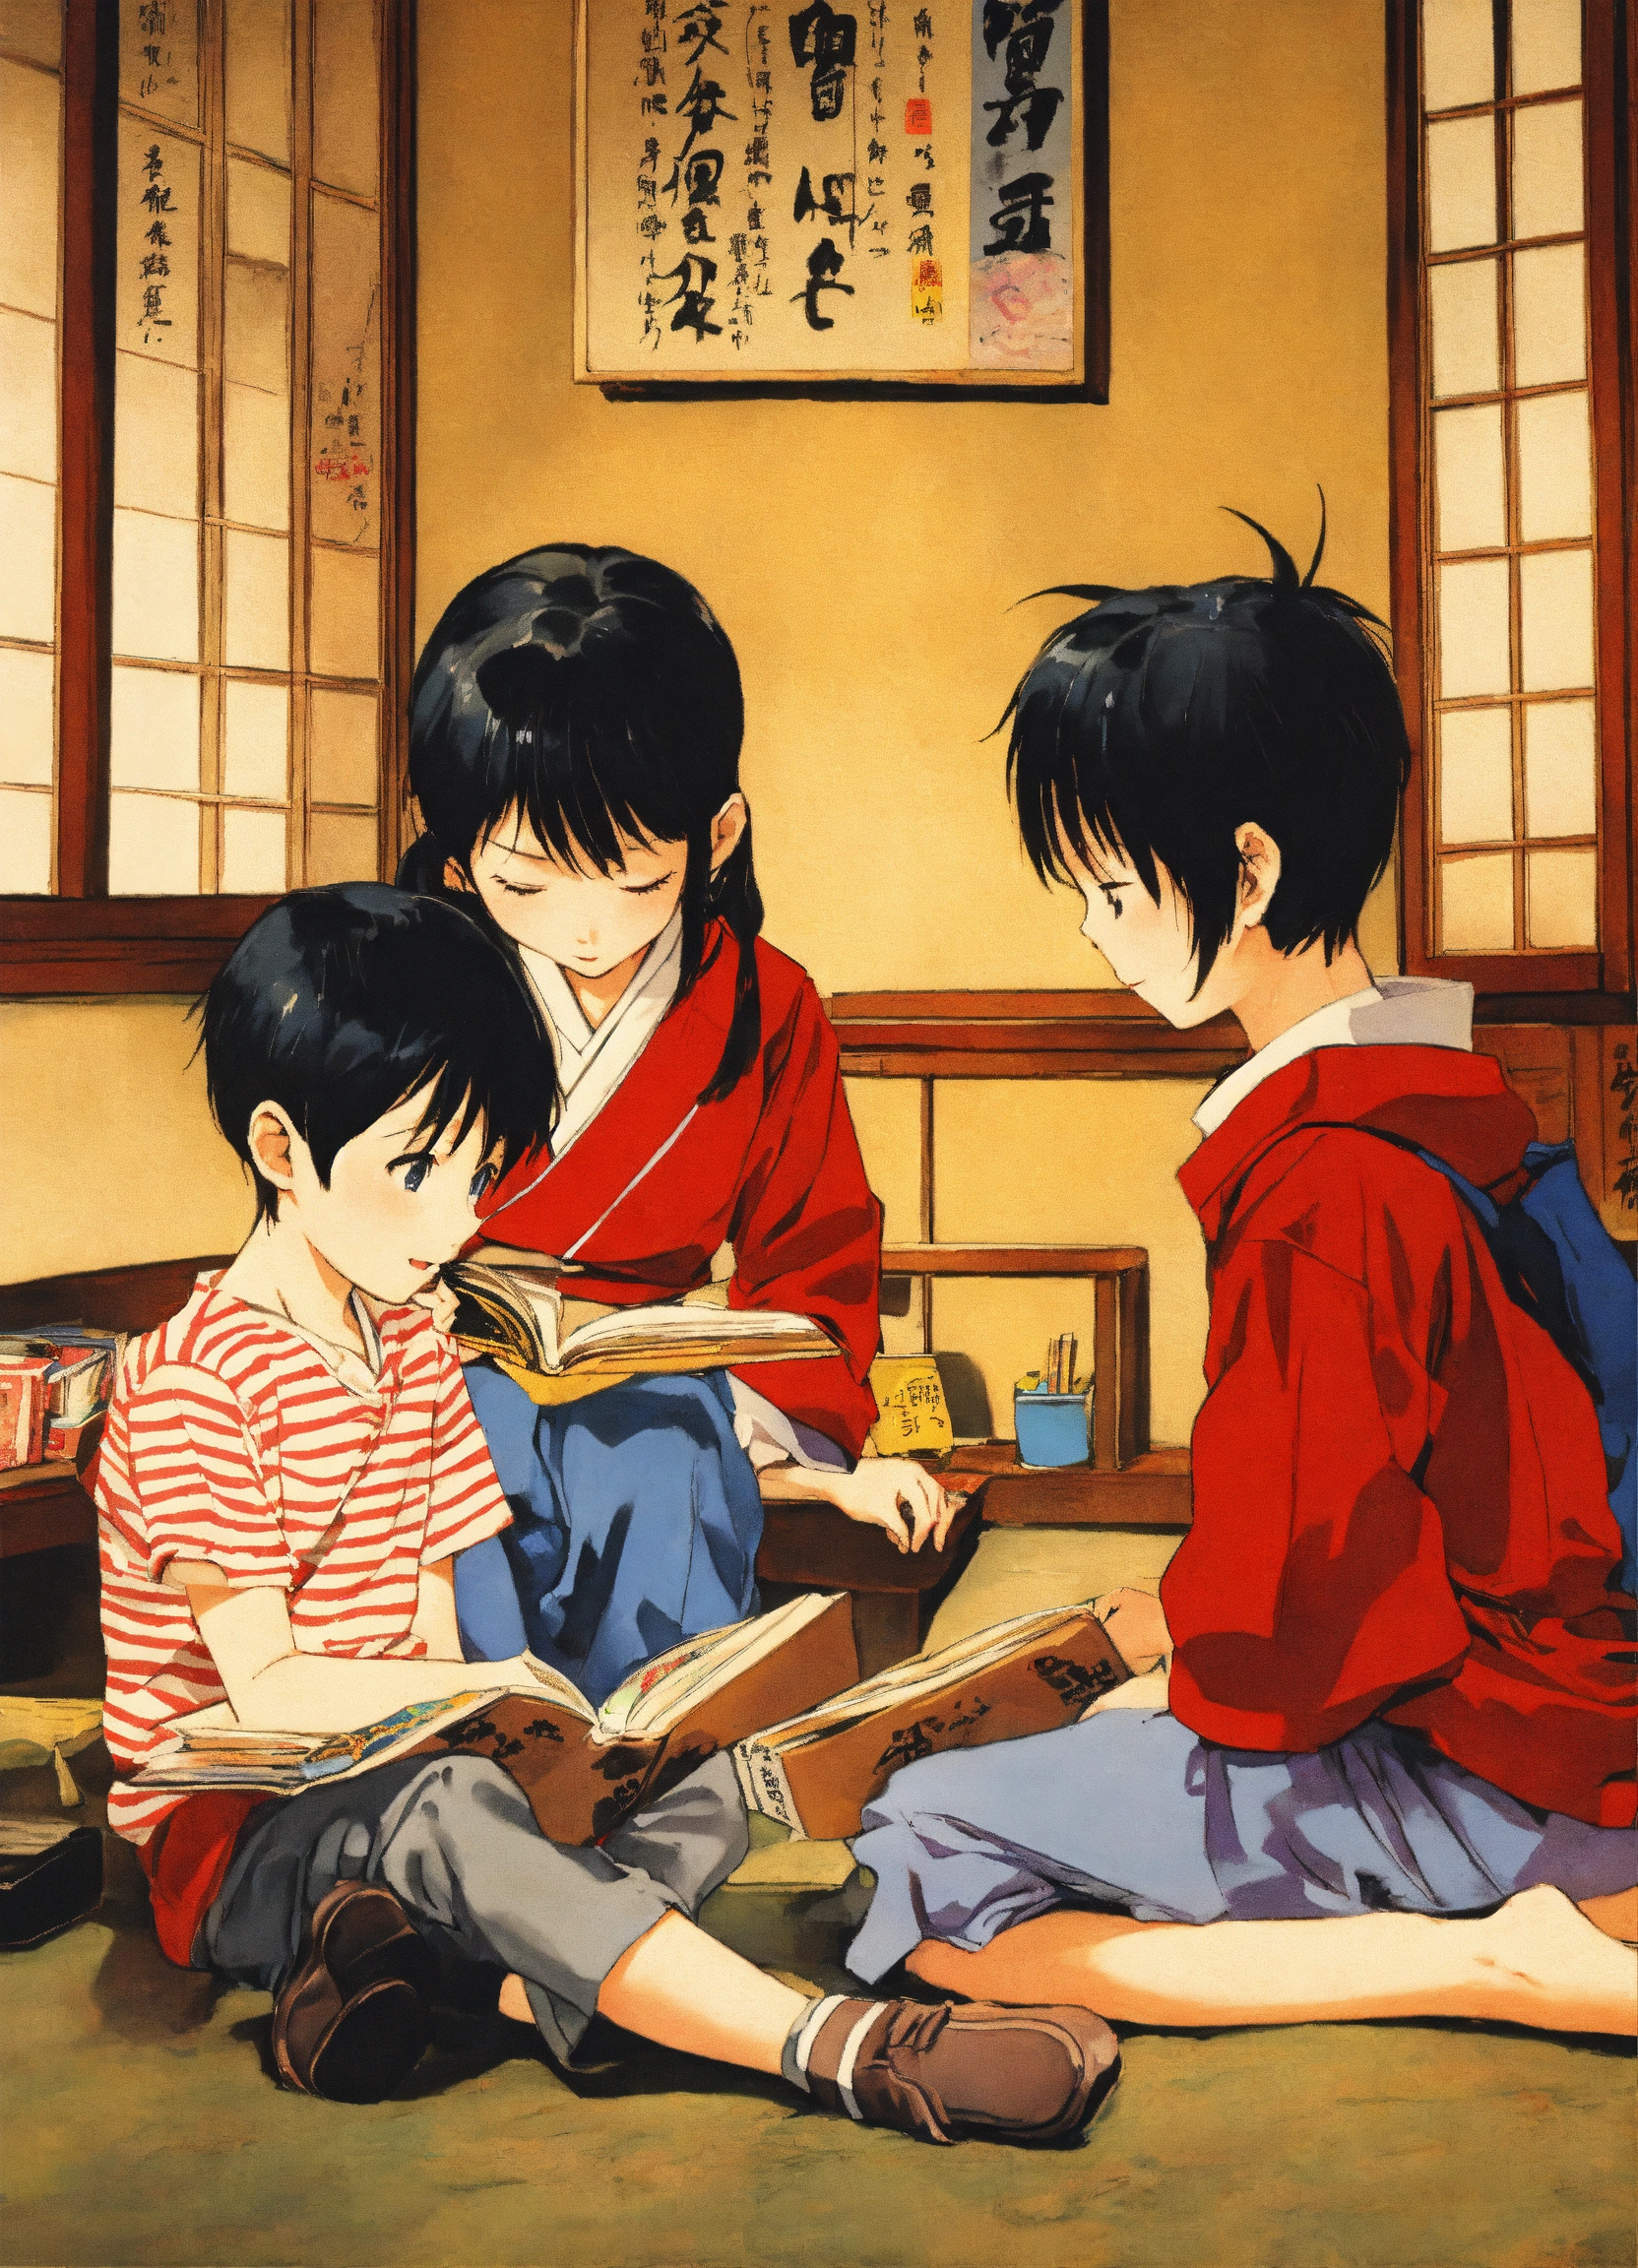 Lexica - Children talking, Japanese manga, reading